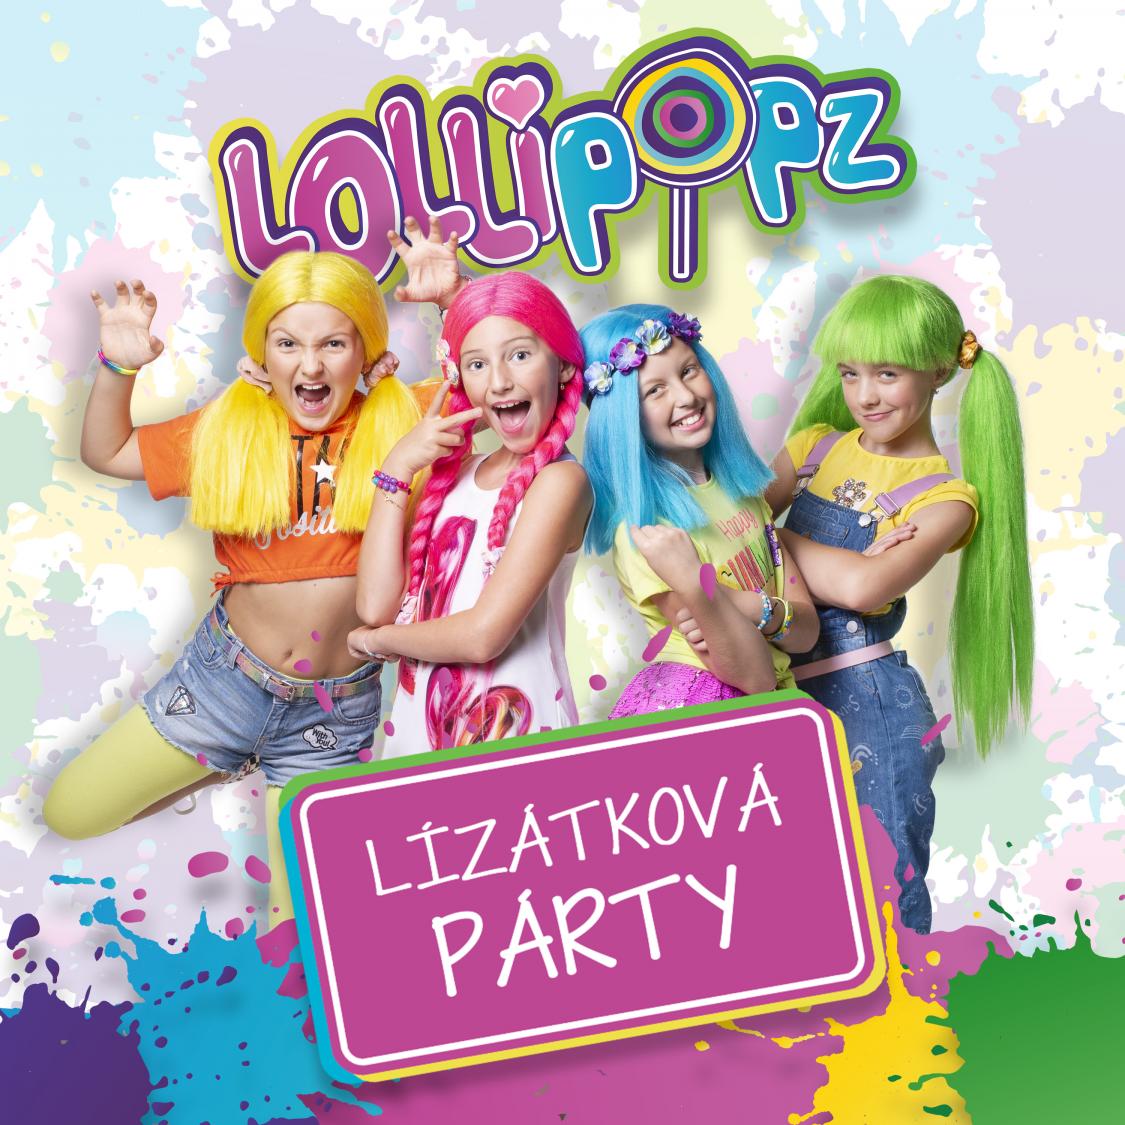 Lollipopz - Lízátková Párty - 6. 11. 2022 v 15.00